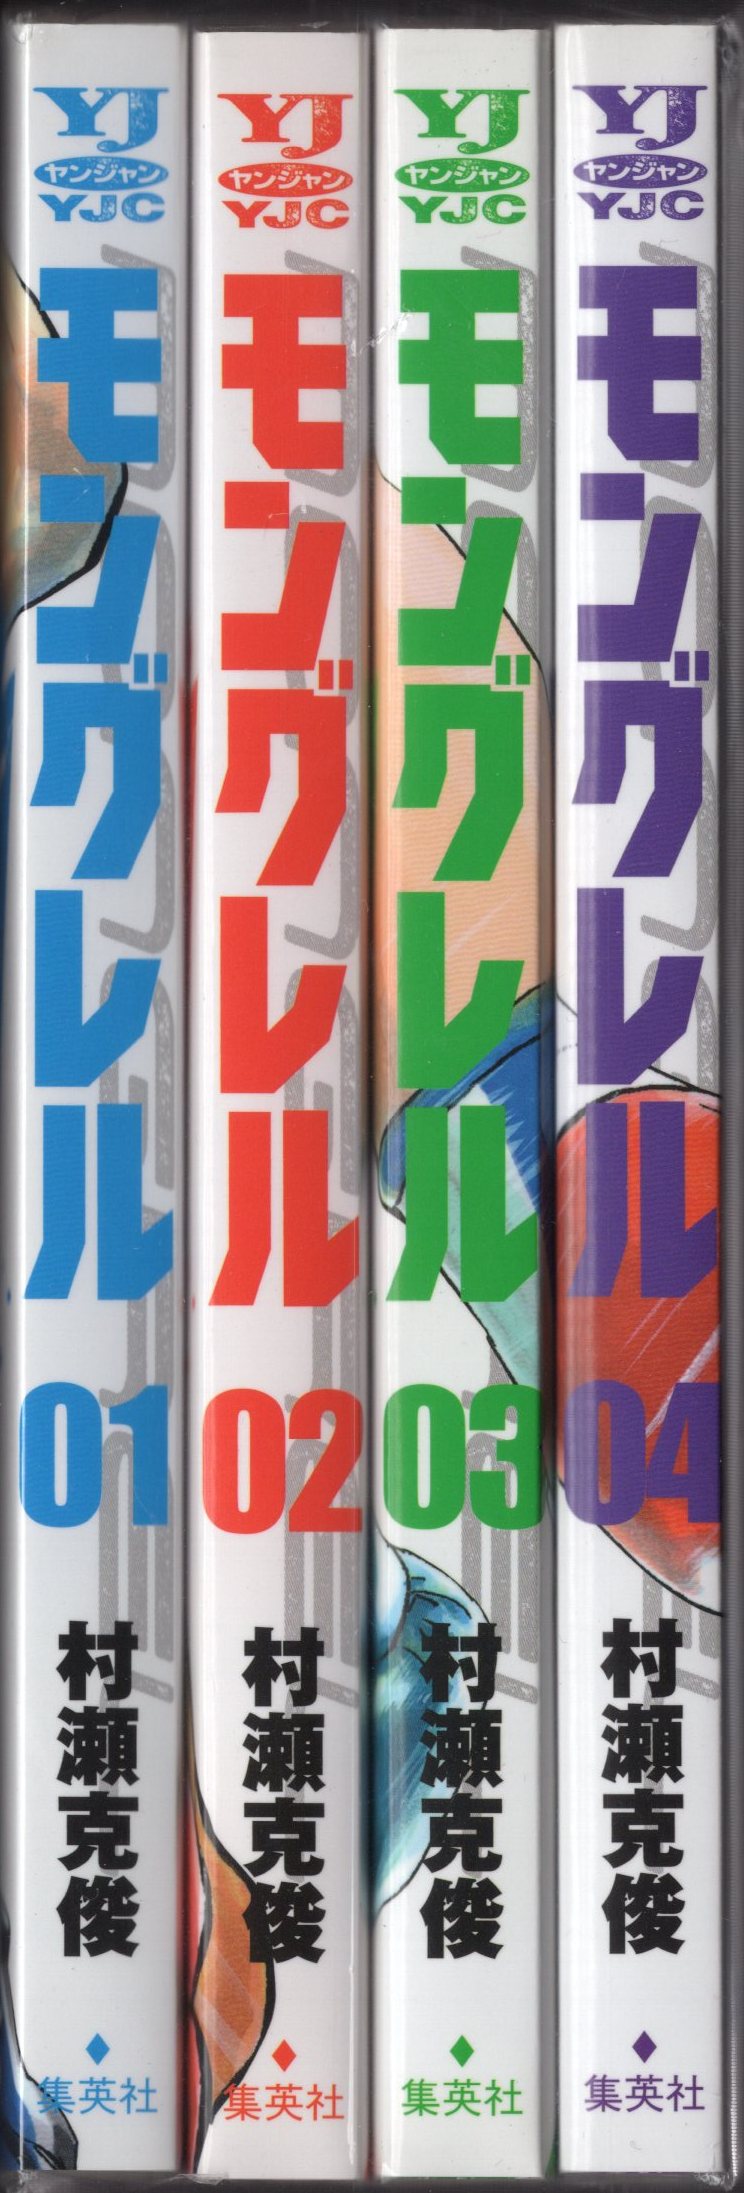 集英社 ヤングジャンプコミックス 村瀬克俊 モングレル 全4巻 初版セット まんだらけ Mandarake